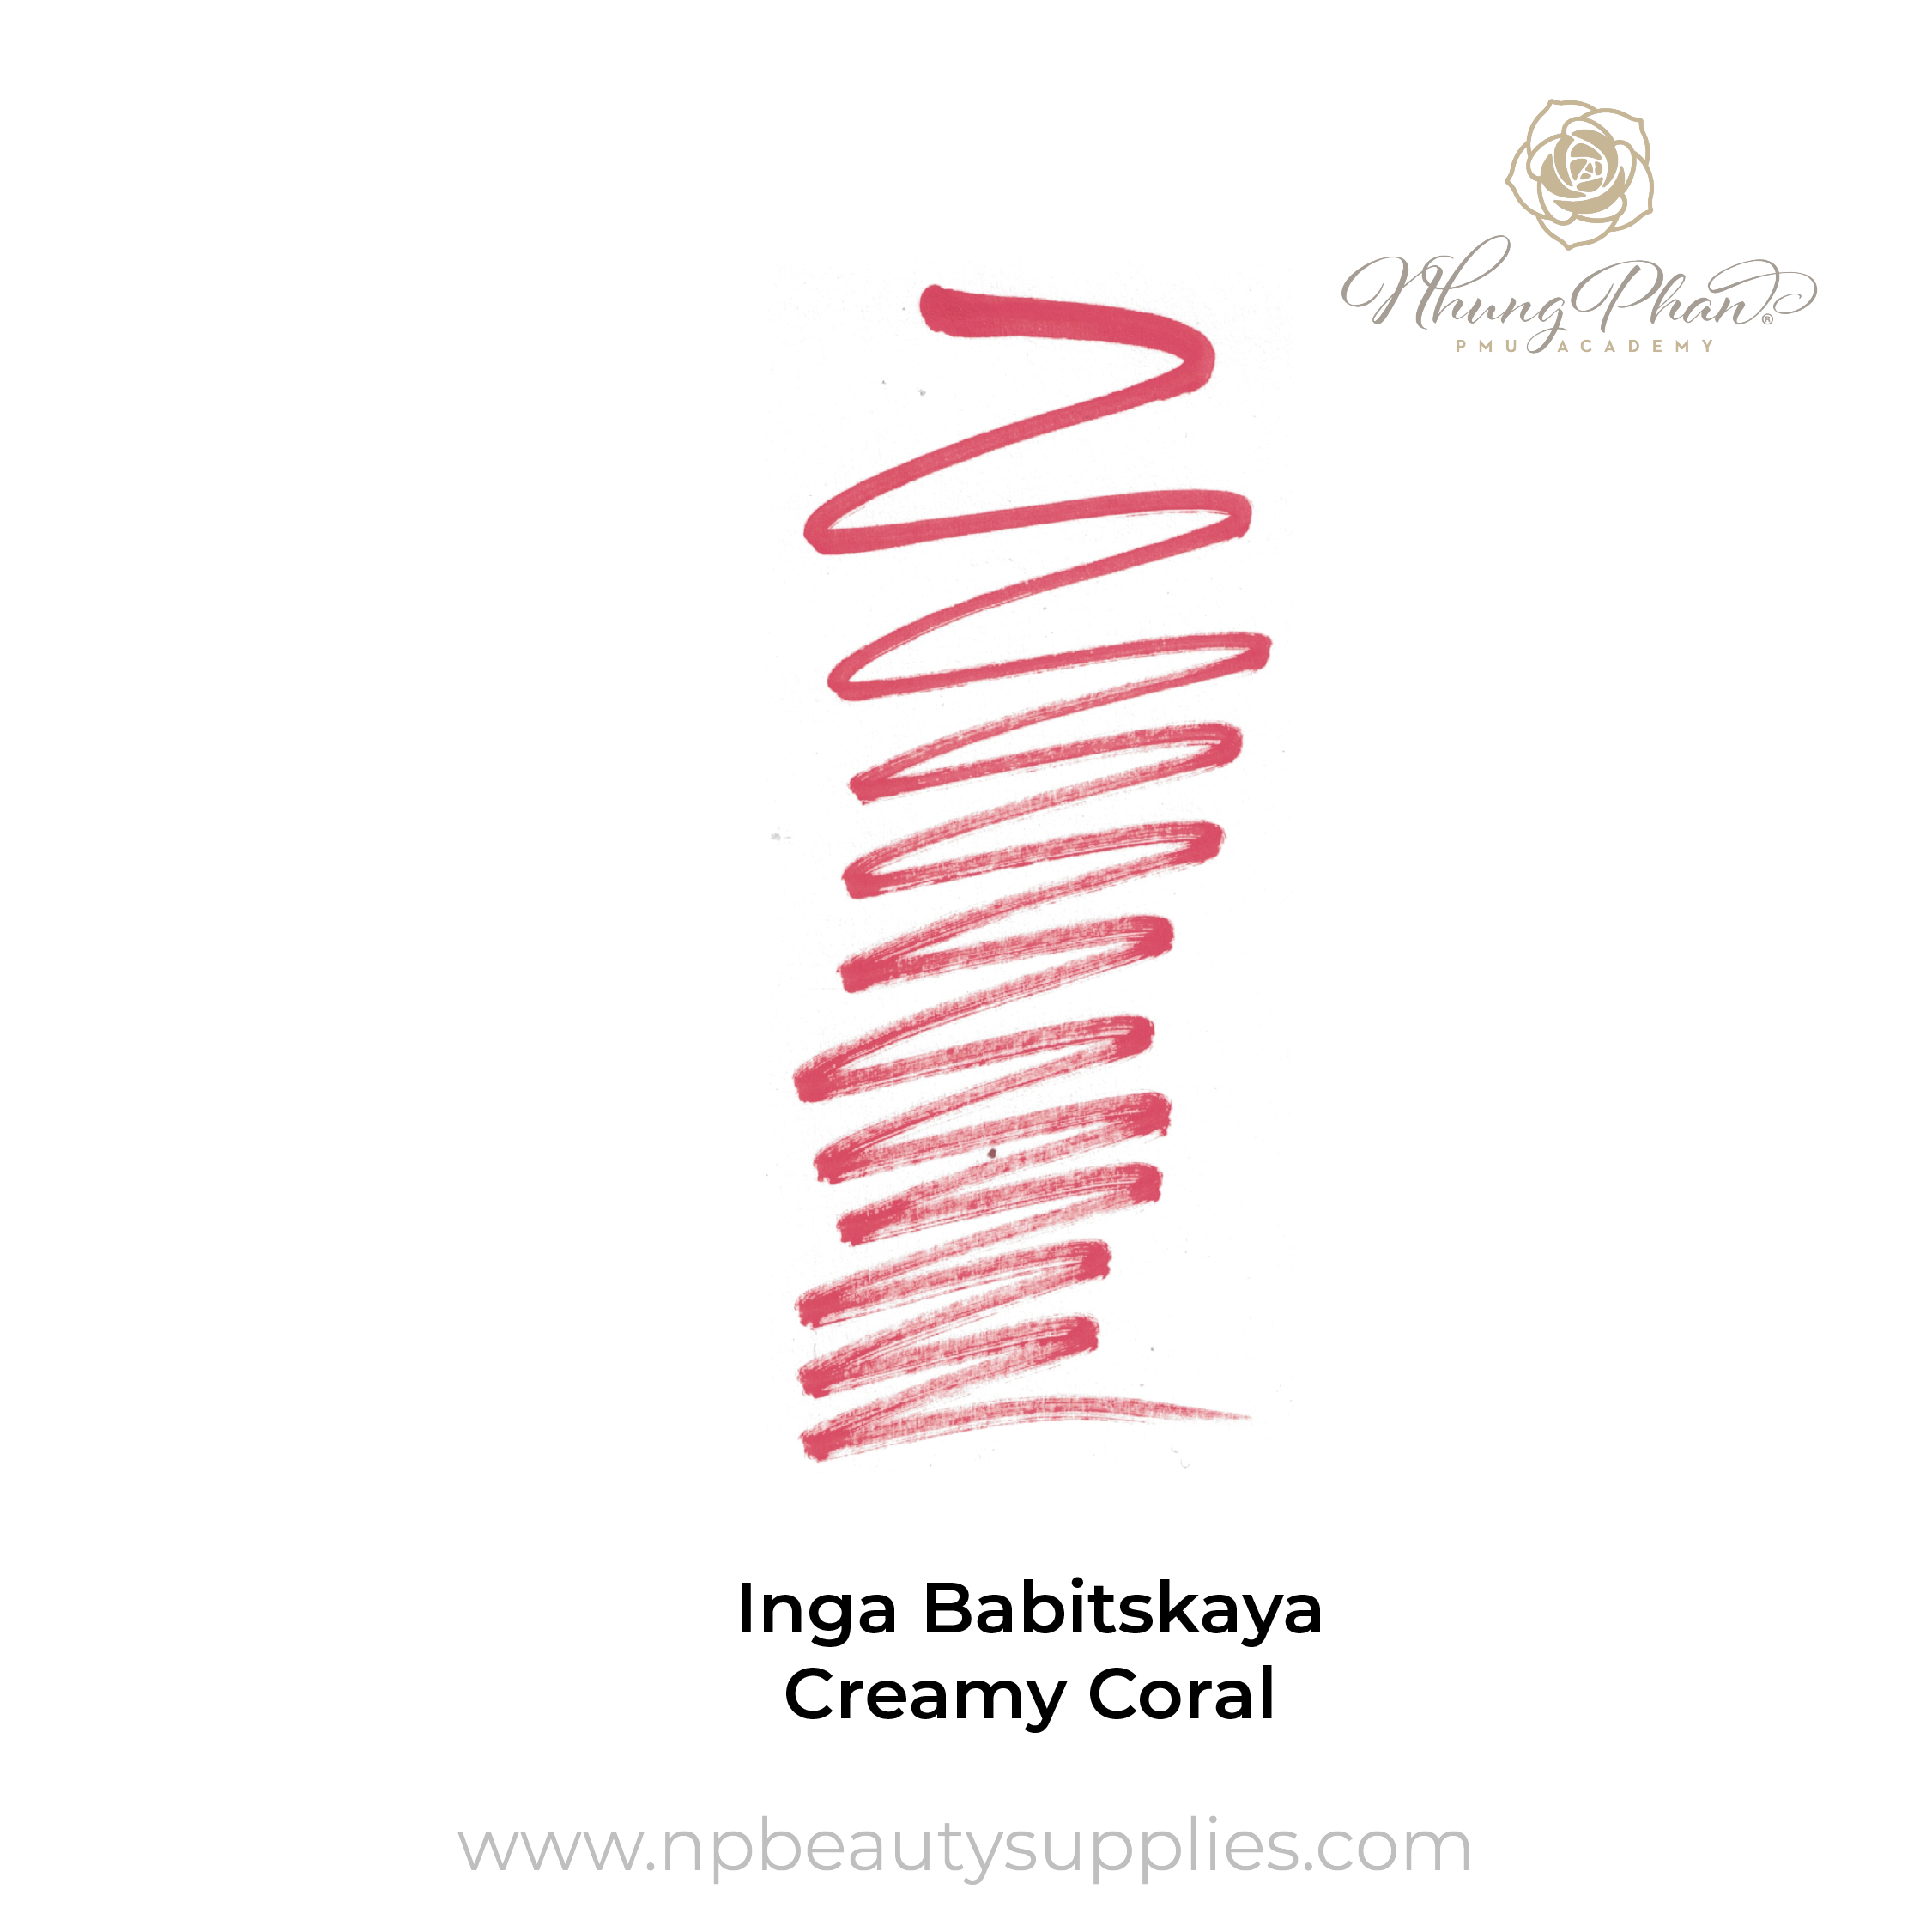 Inga Babitskaya - Creamy Coral